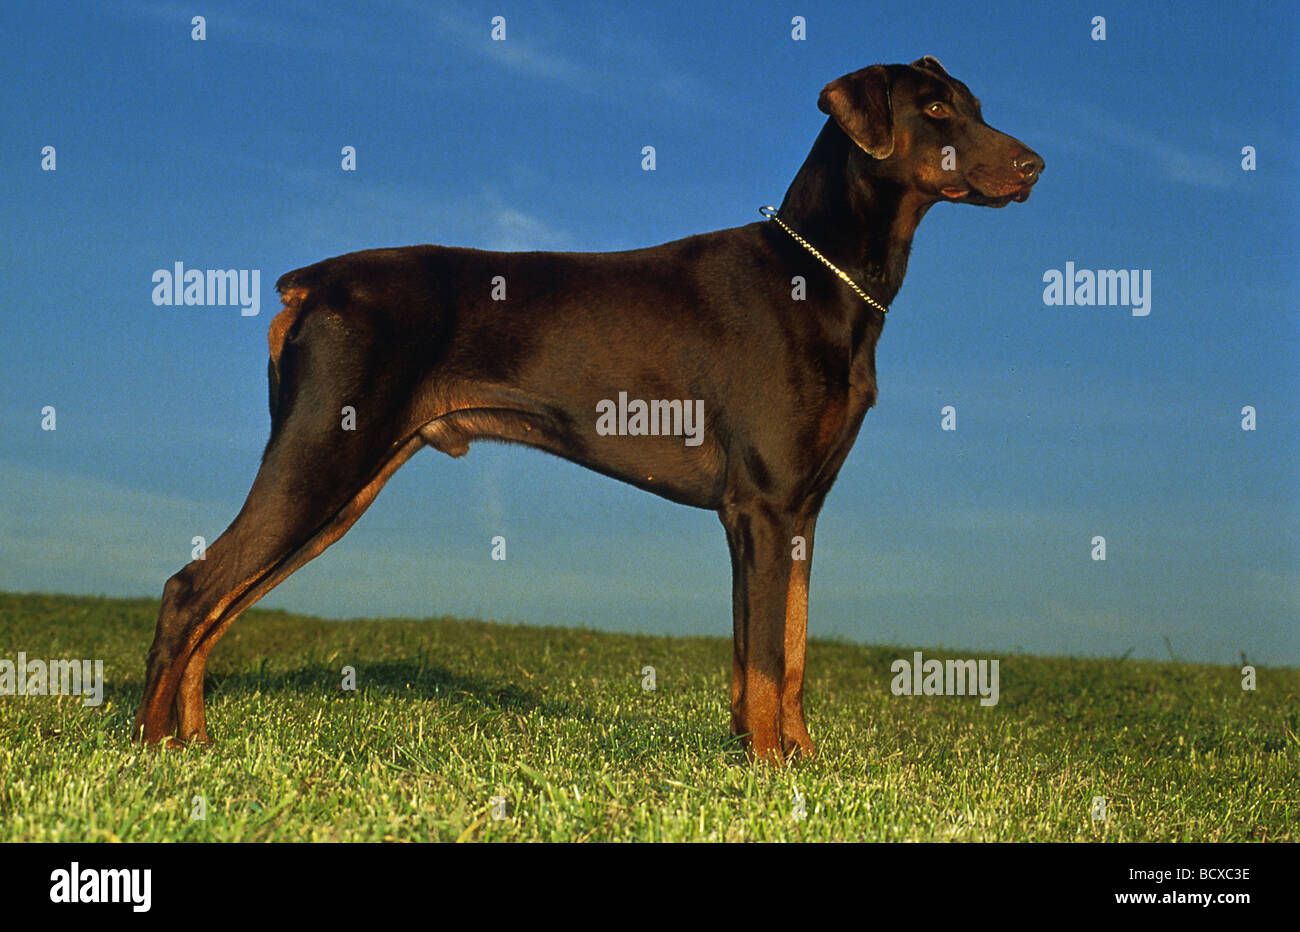 Dobermann - braun - seitlich stehend auf Wiese Stock Photo